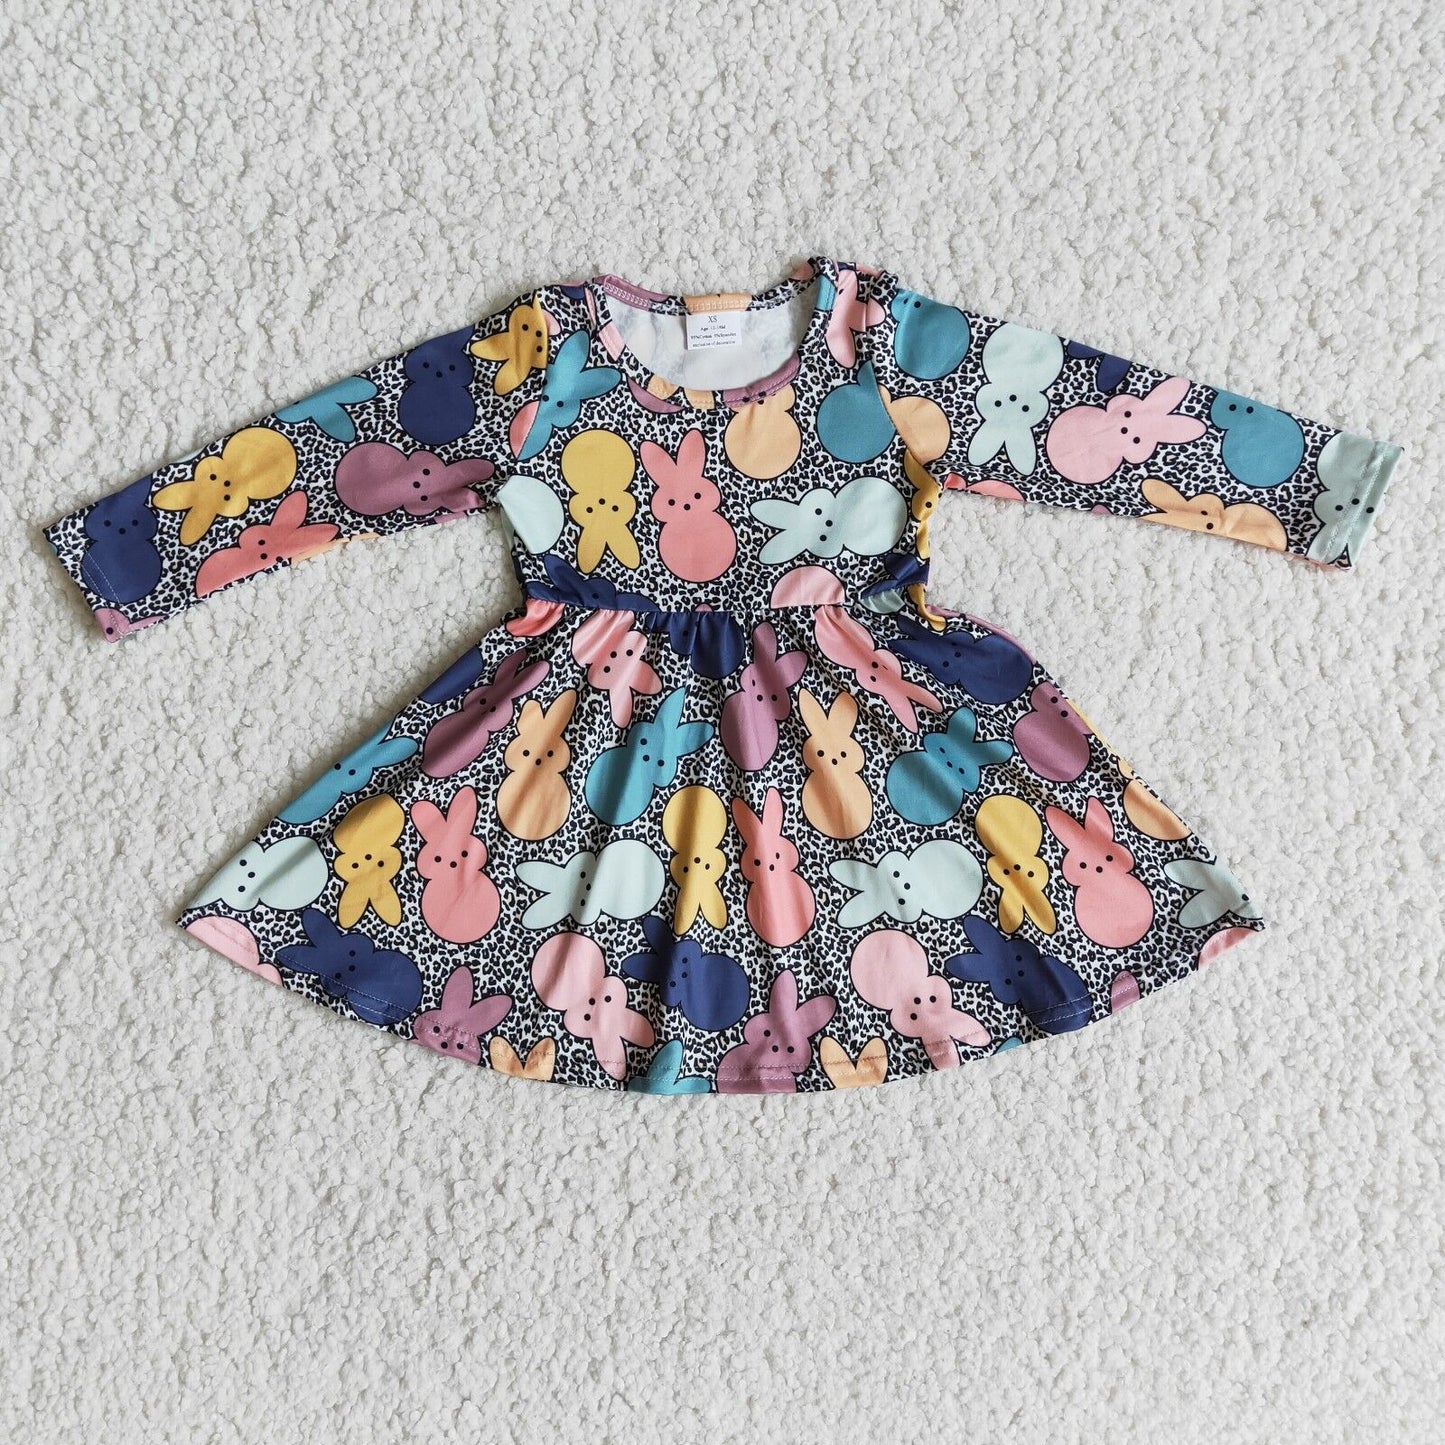 Baby girl easter dress